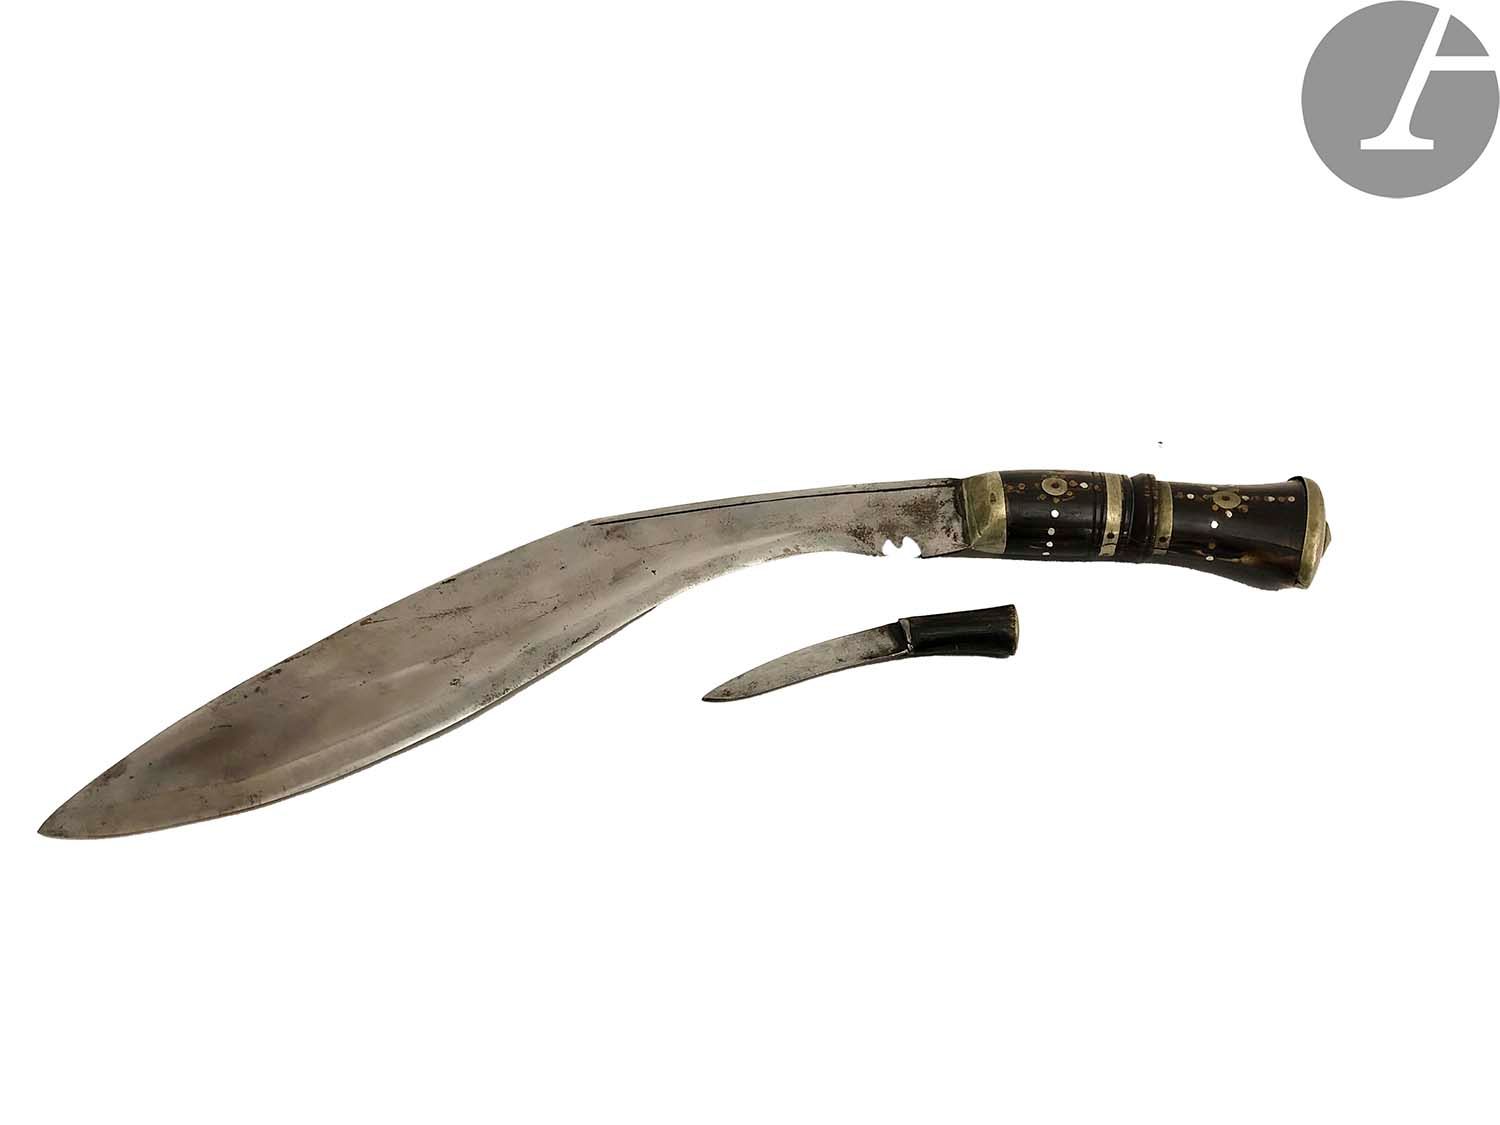 Null 匕首，镶嵌金属圆环的保险丝，以及同一皮鞘中的小刀。
北非。
长度：43厘米
（意外）。